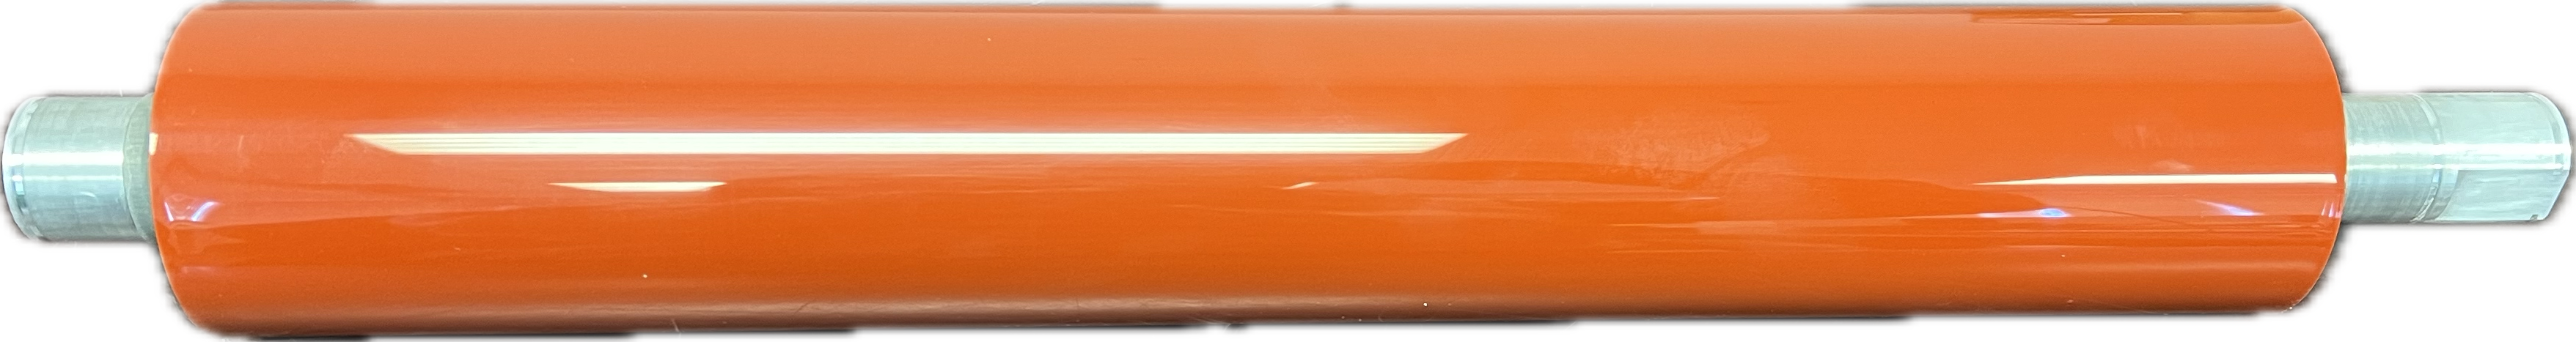 Konica Minolta Fusing Roller Lower | A57V740101